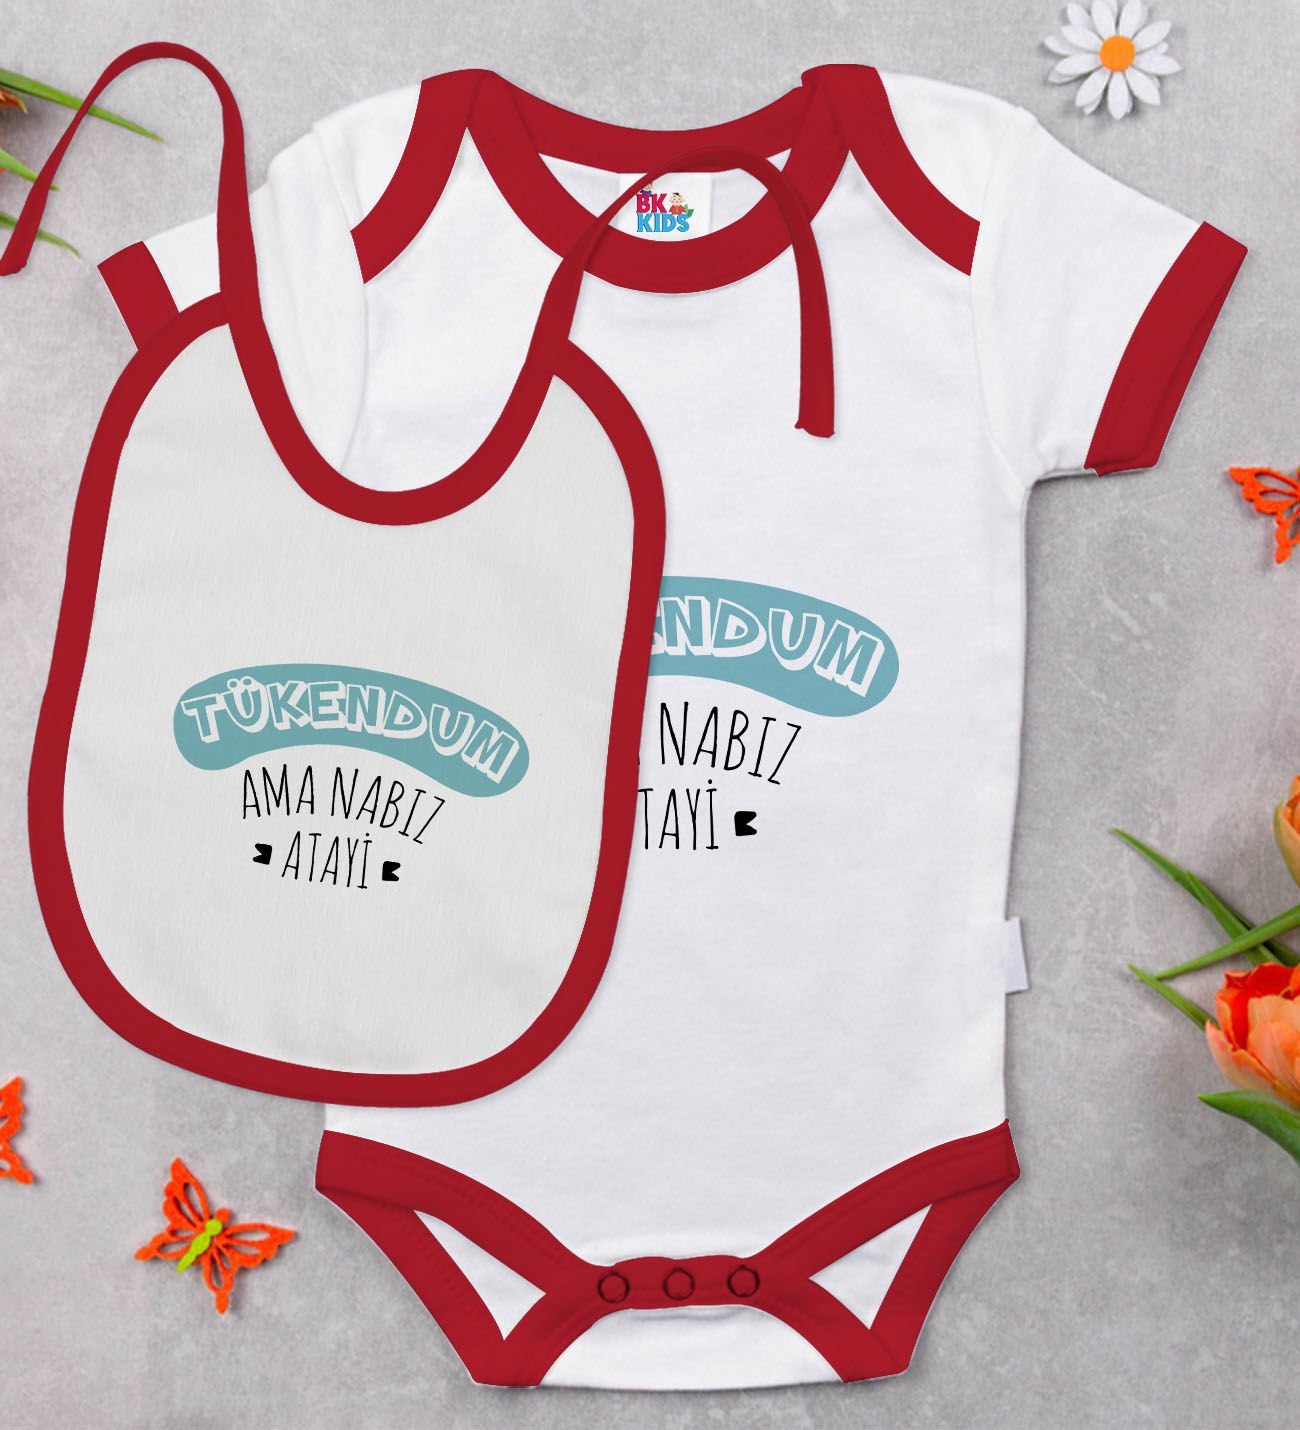 BK Kids Tükendum Tasarımlı Kırmızı Bebek Body Zıbın ve Mama Önlüğü Hediye Seti-1